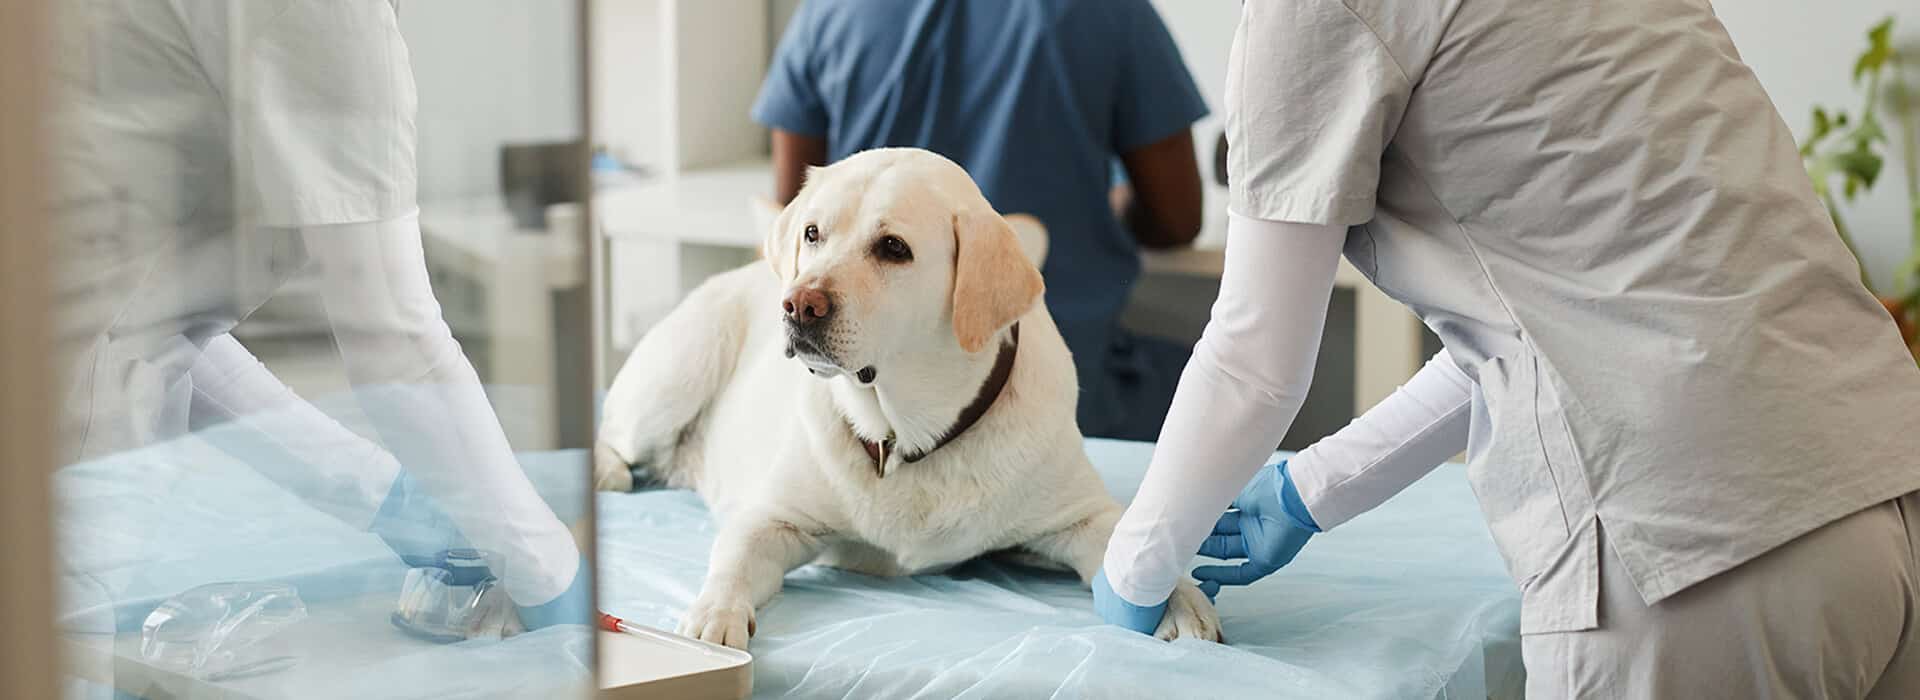 Curso Auxiliar Fisioterapia y Rehabilitación Animal: Perros, gatos y caballos